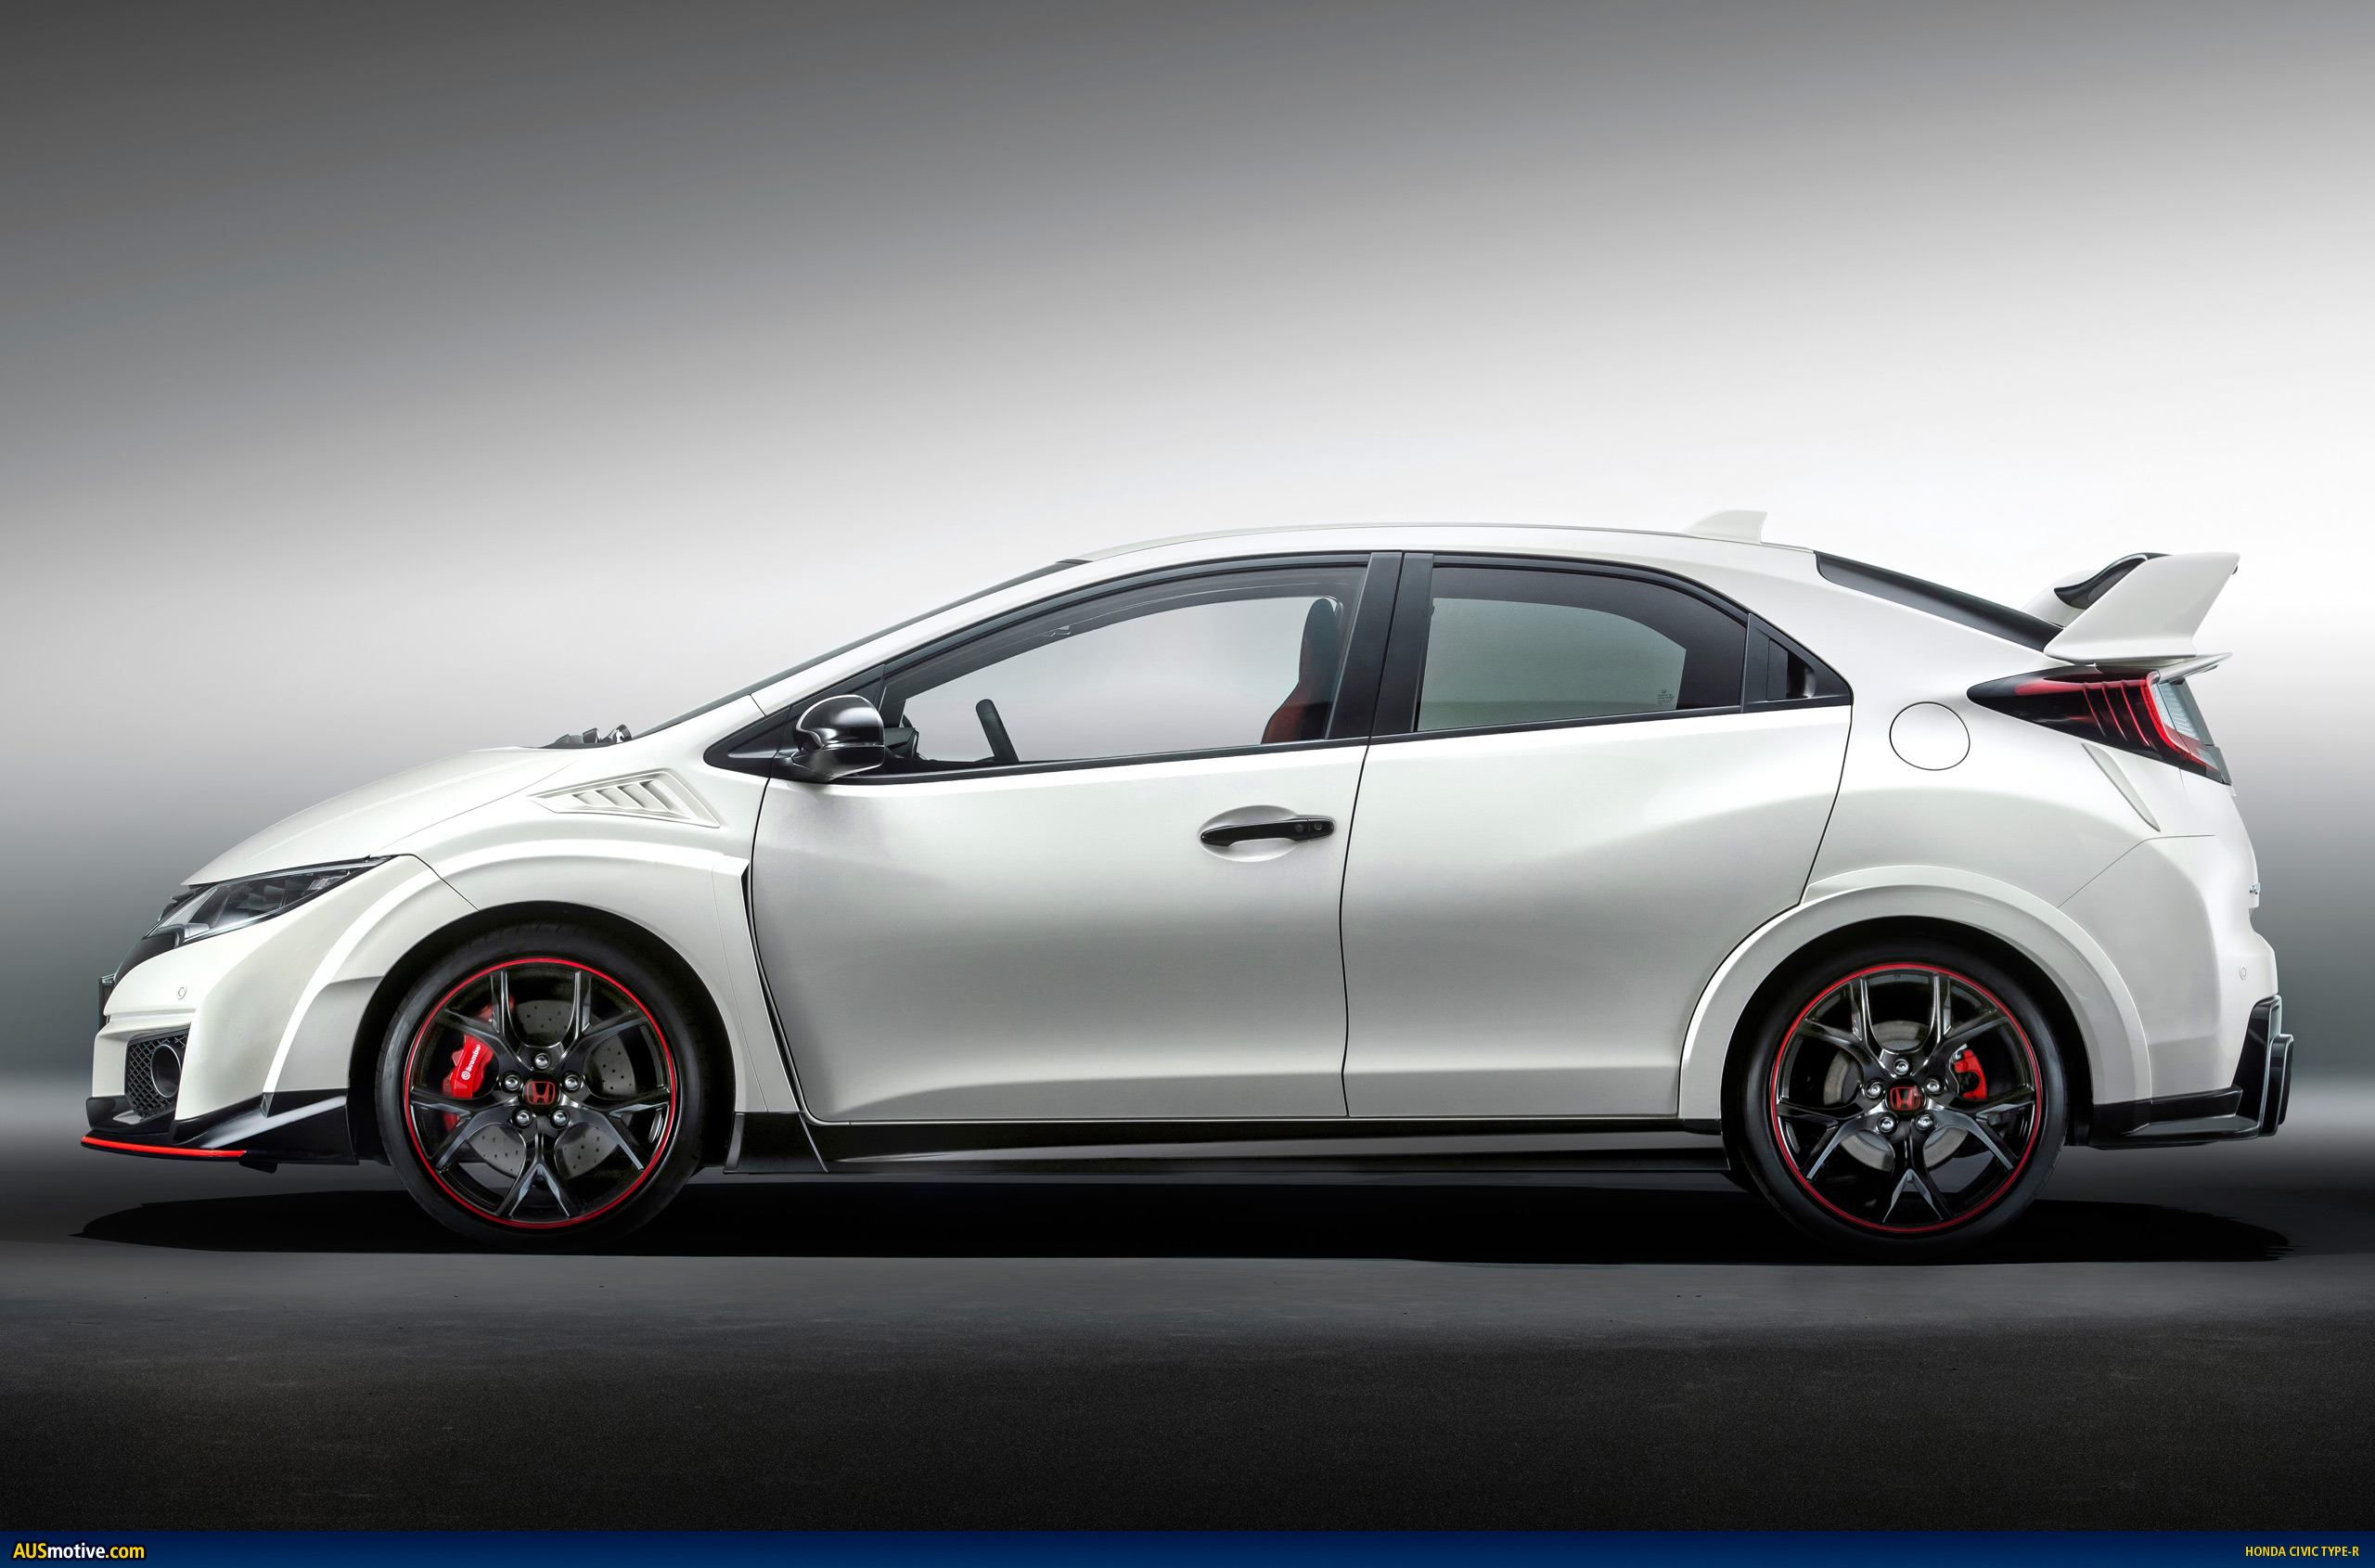 AUSmotive.com » Geneva 2015: Honda Civic Type R